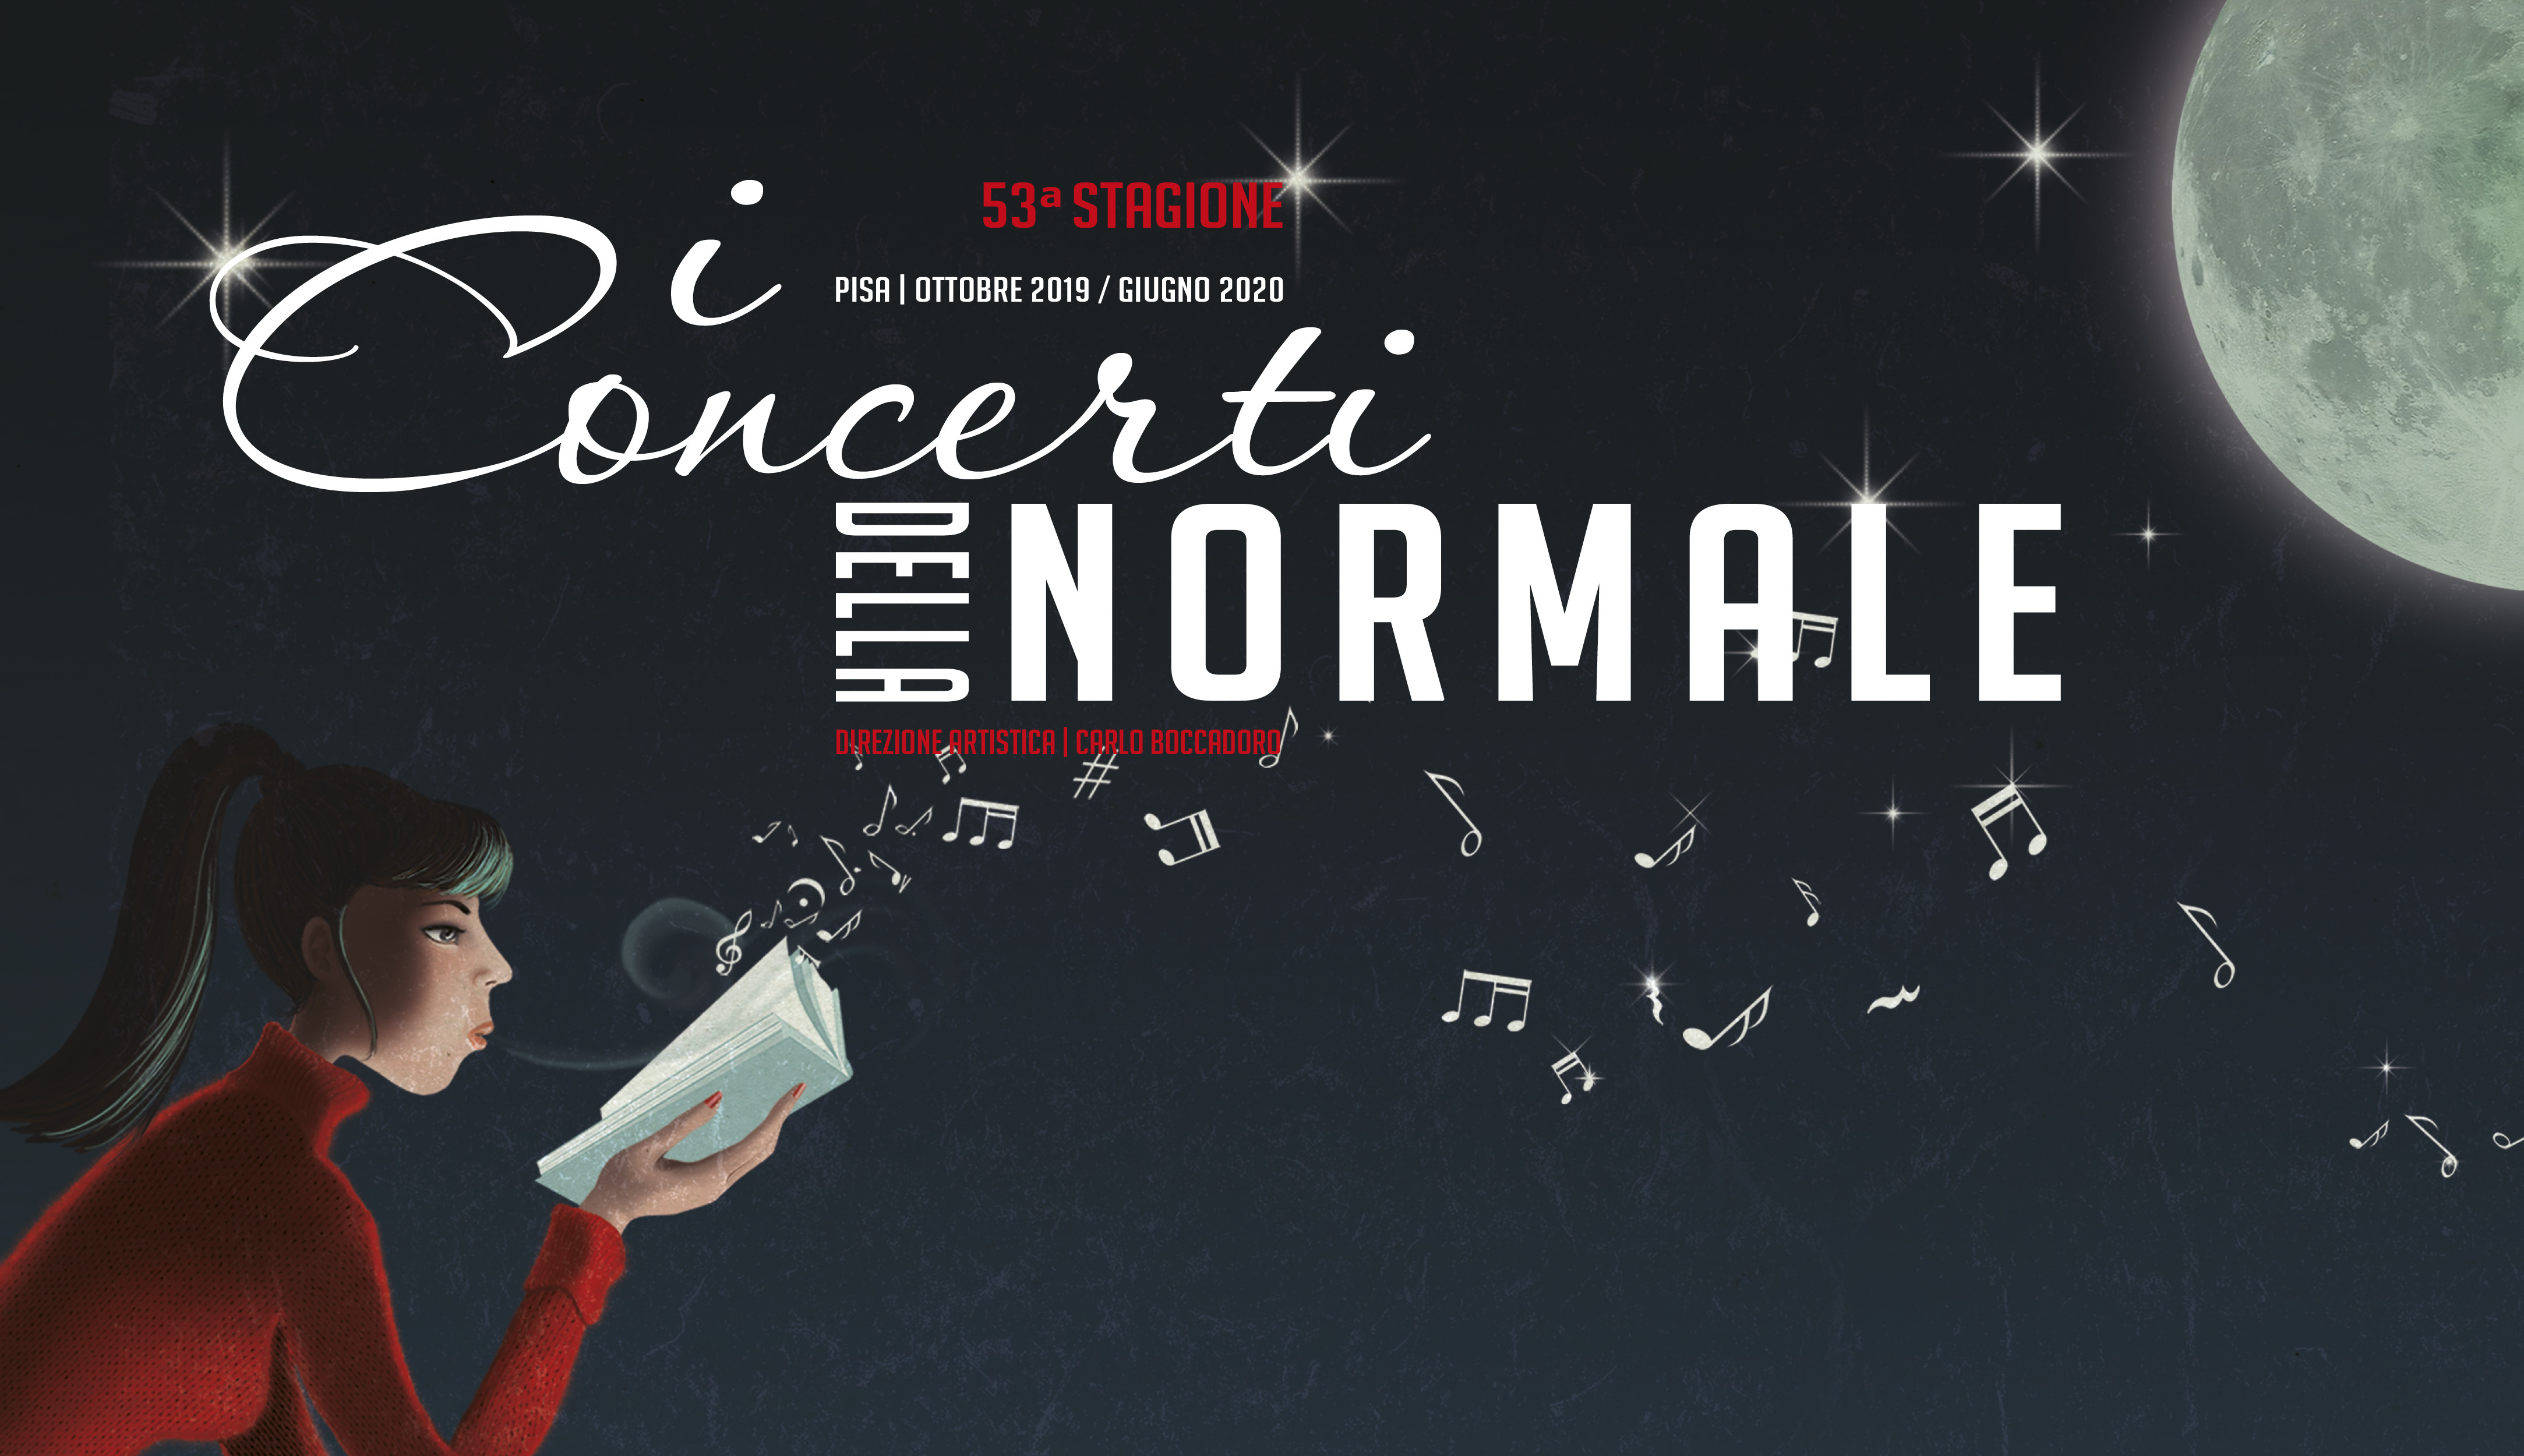 Image for 53a Stagione dei Concerti della Normale